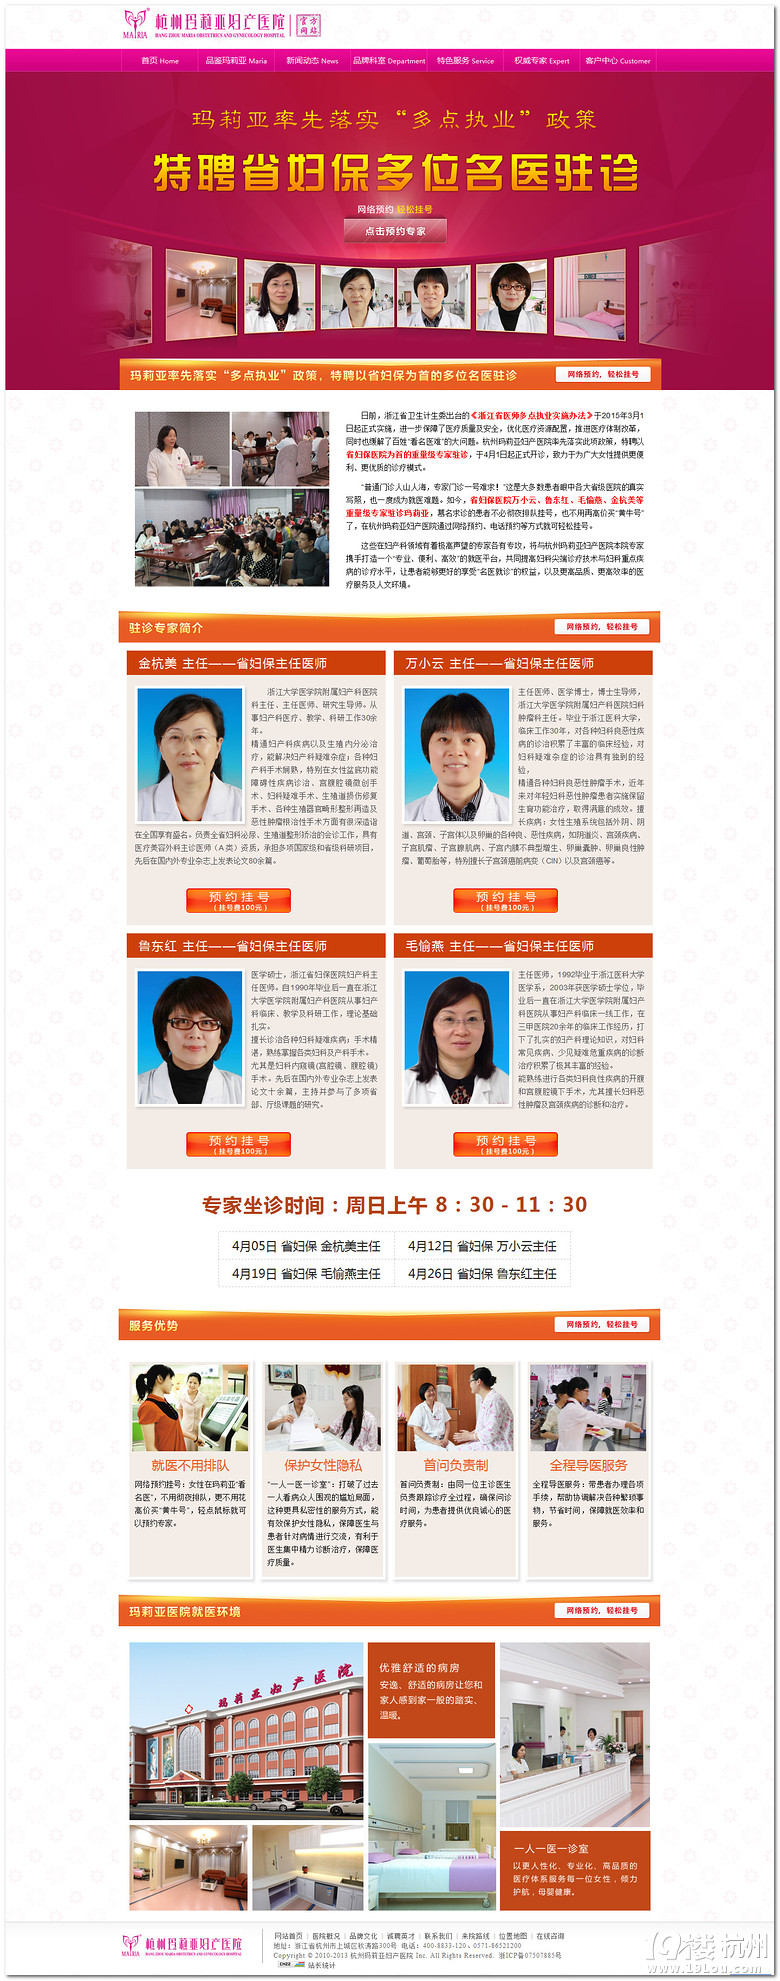 杭州省妇保专家坐诊玛莉亚医院在线咨询预约挂